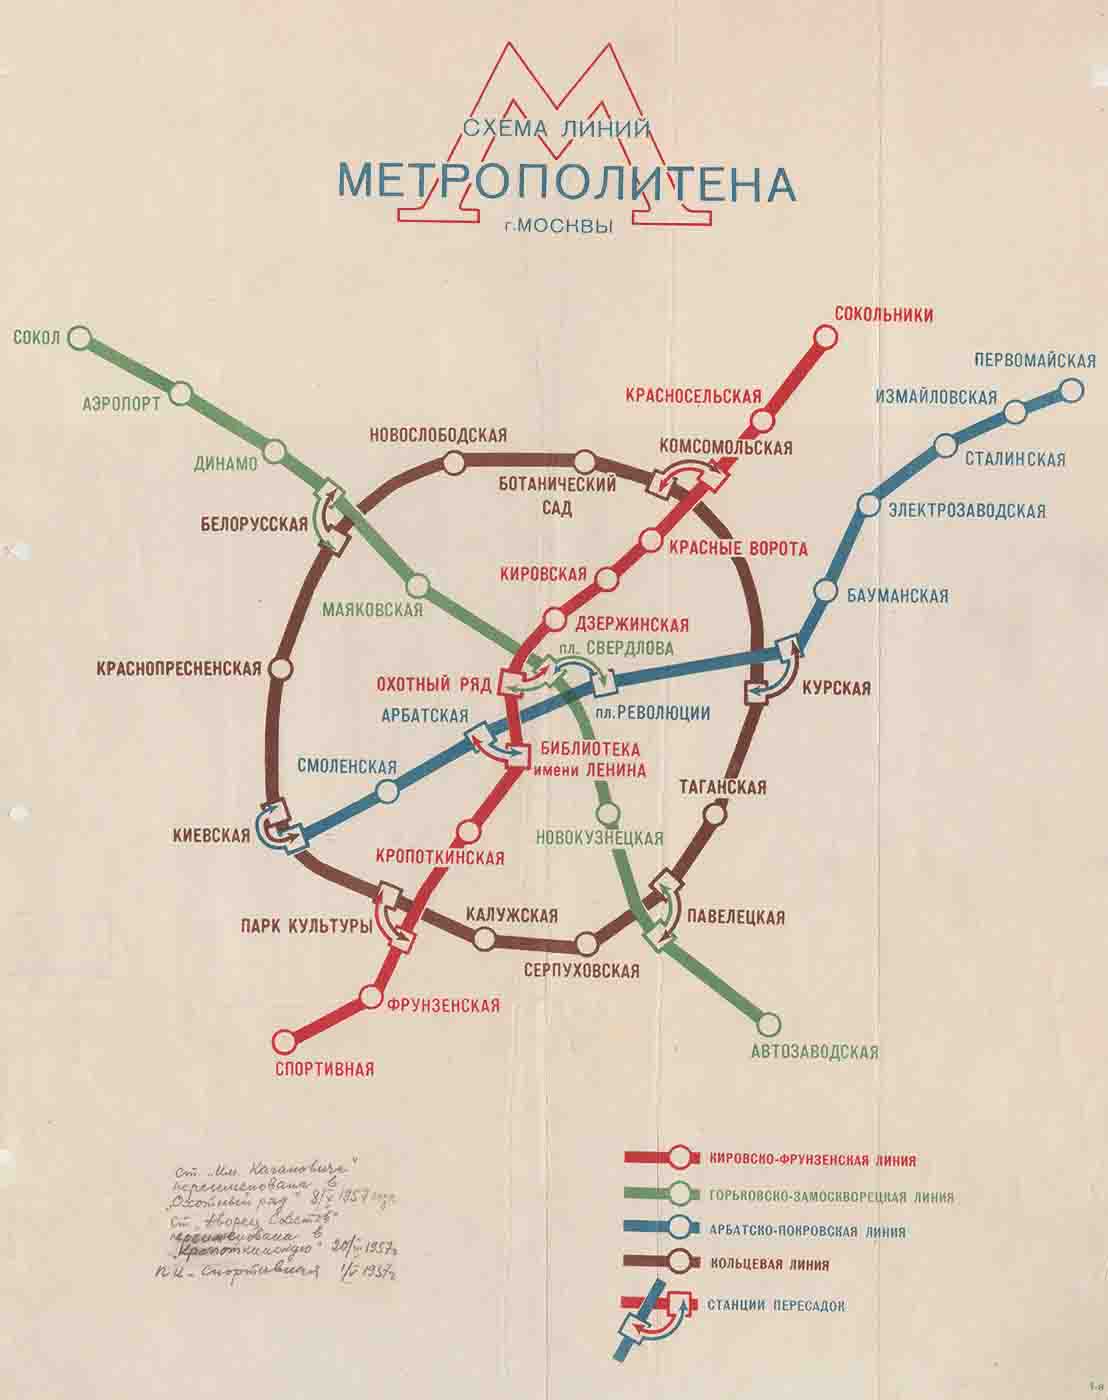 Схема первого метро в СССР